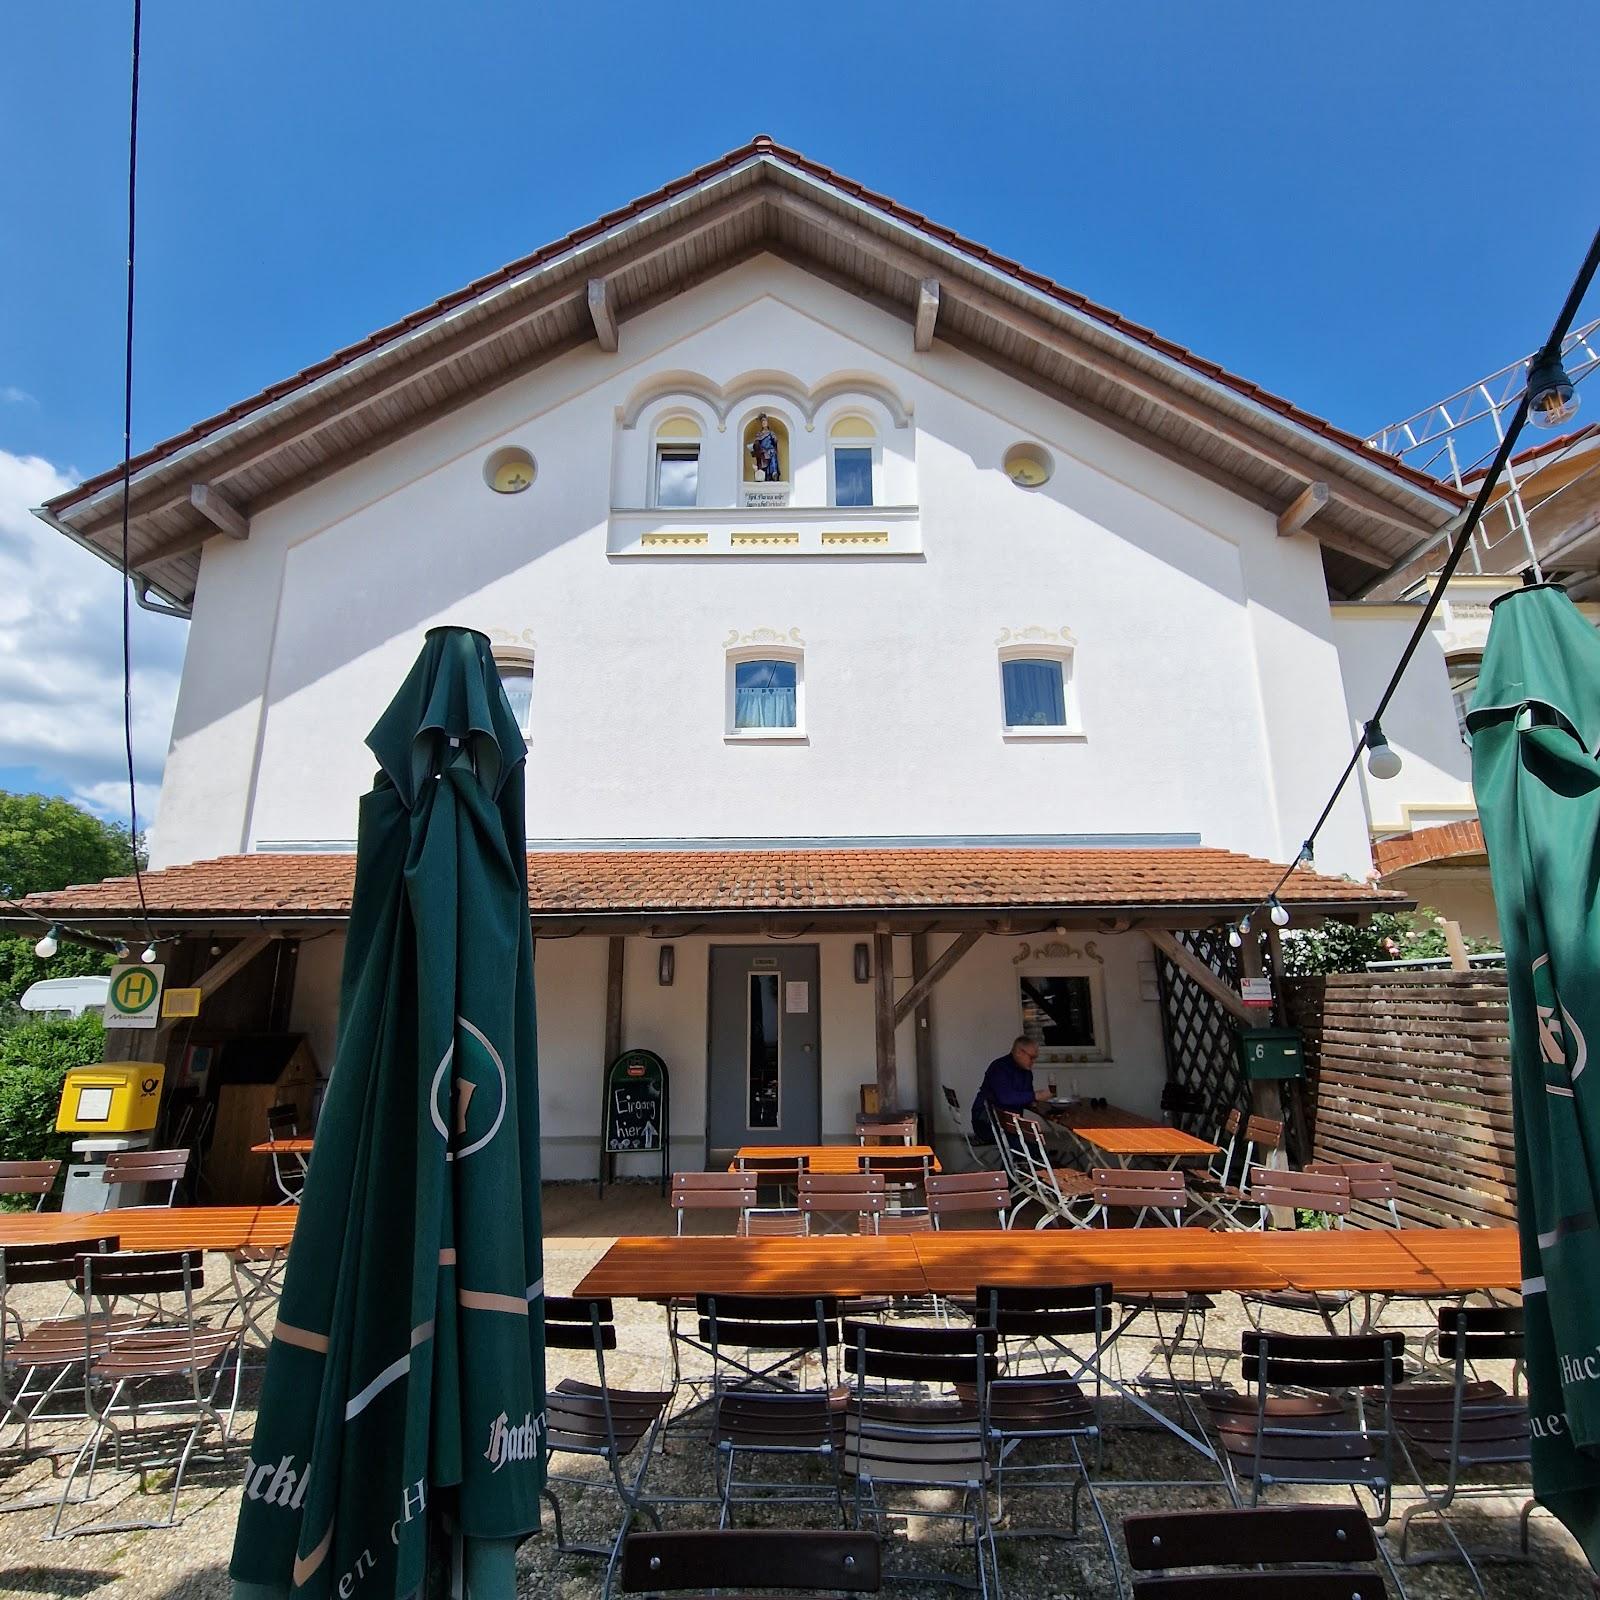 Restaurant "Landgasthof Maier" in Vilsbiburg